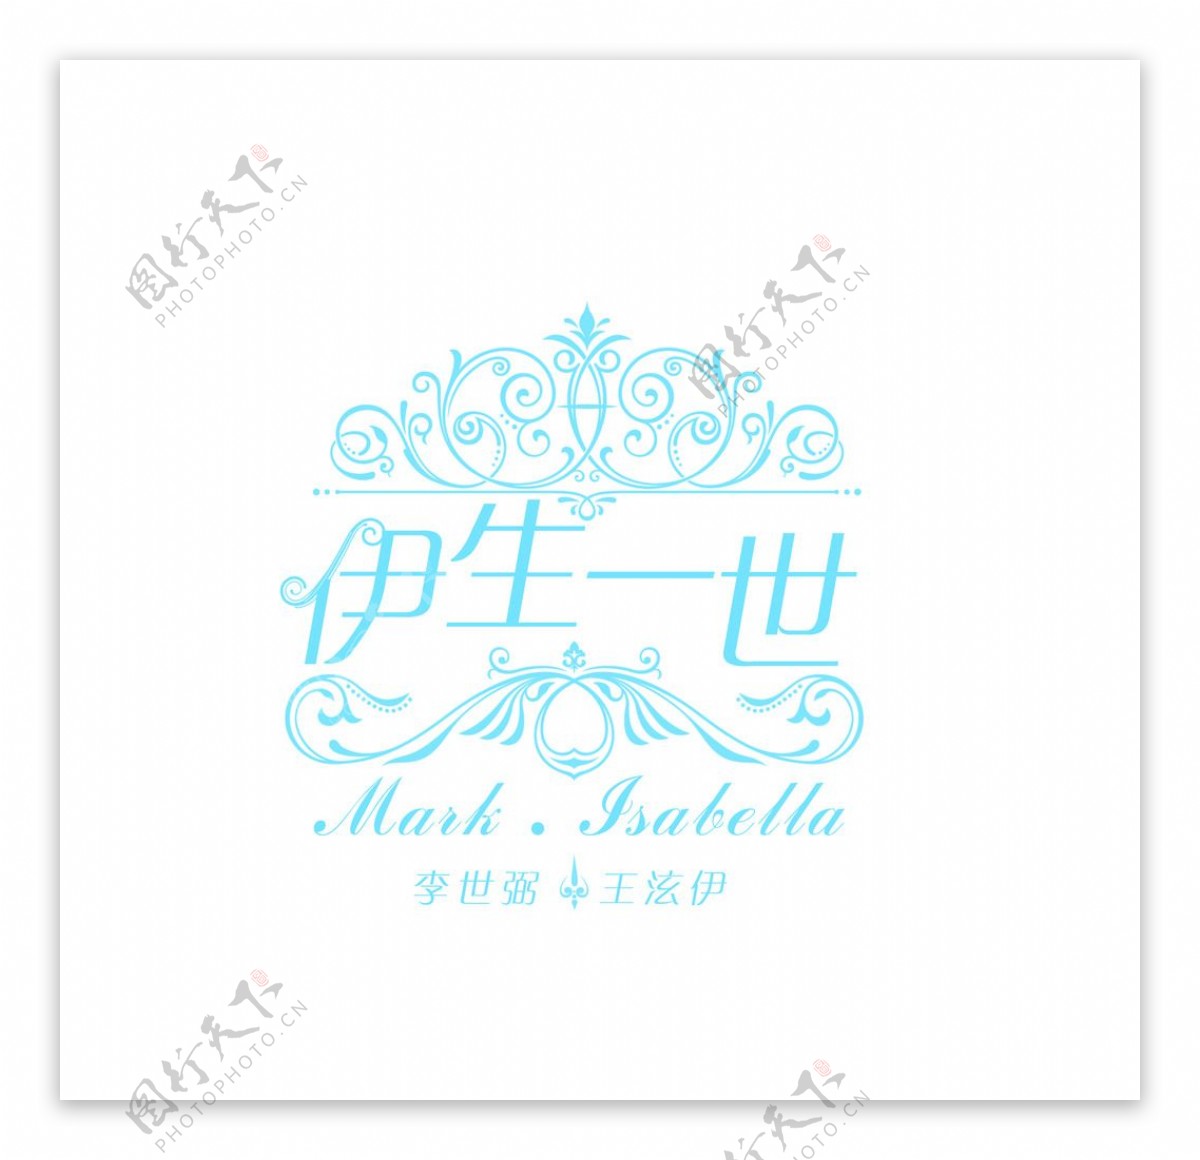 一世一生婚礼logo设计图片